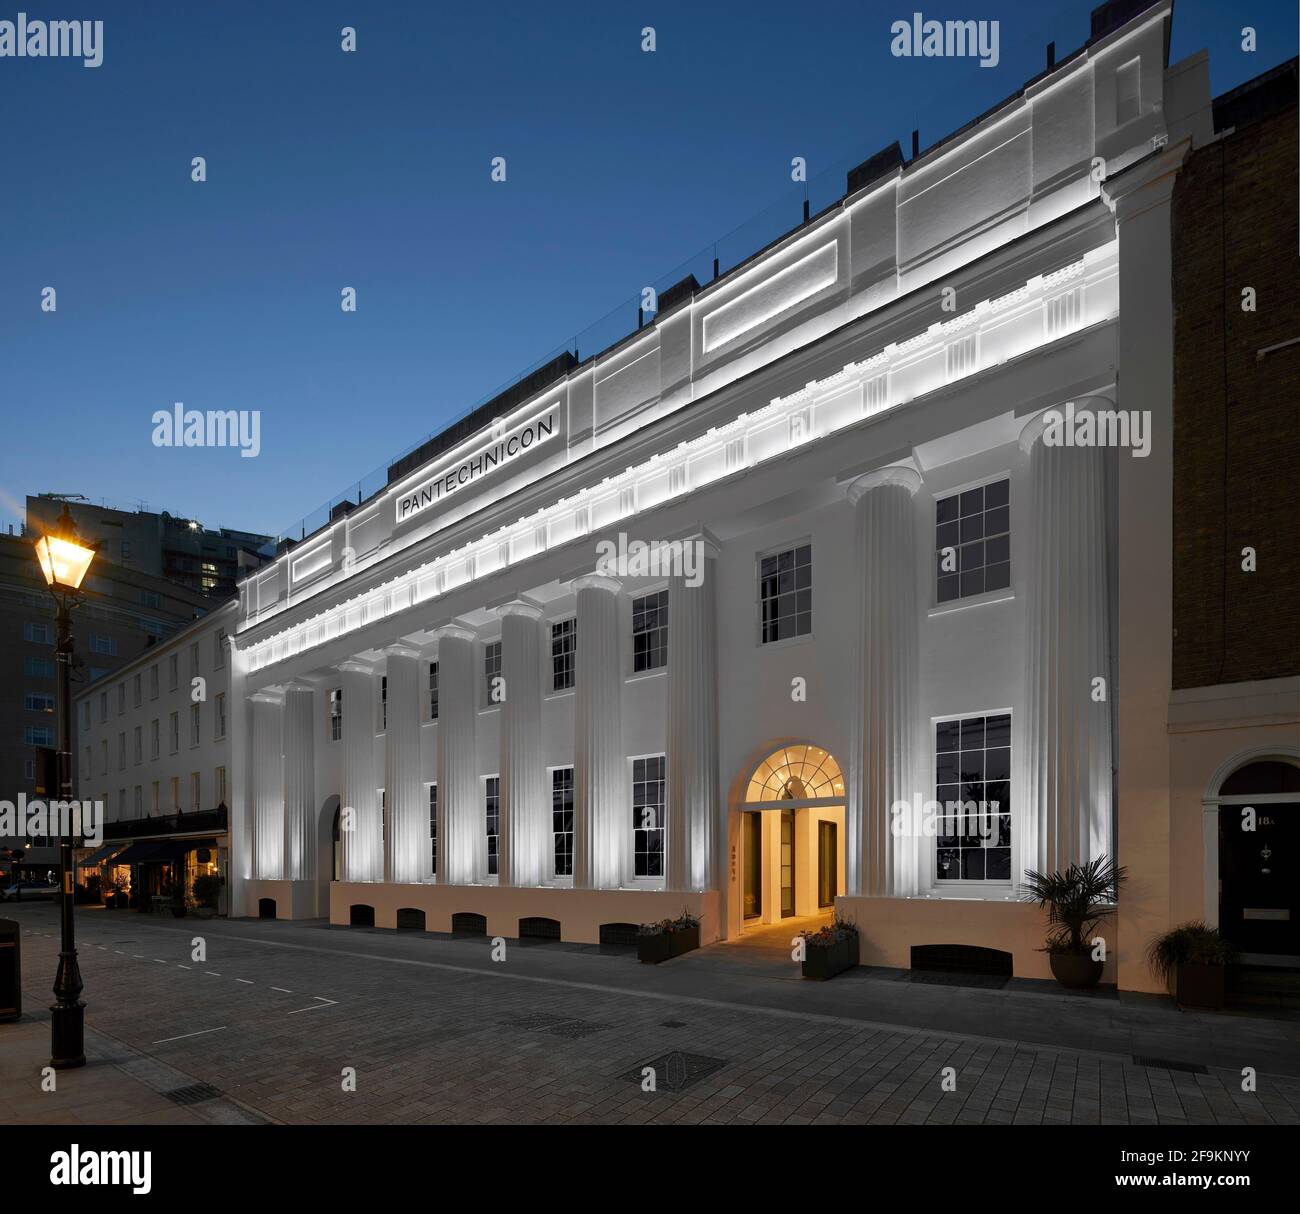 Extérieur au crépuscule. Pantechnicon, Londres, Royaume-Uni. Architecte: Farrells, 2020. Banque D'Images